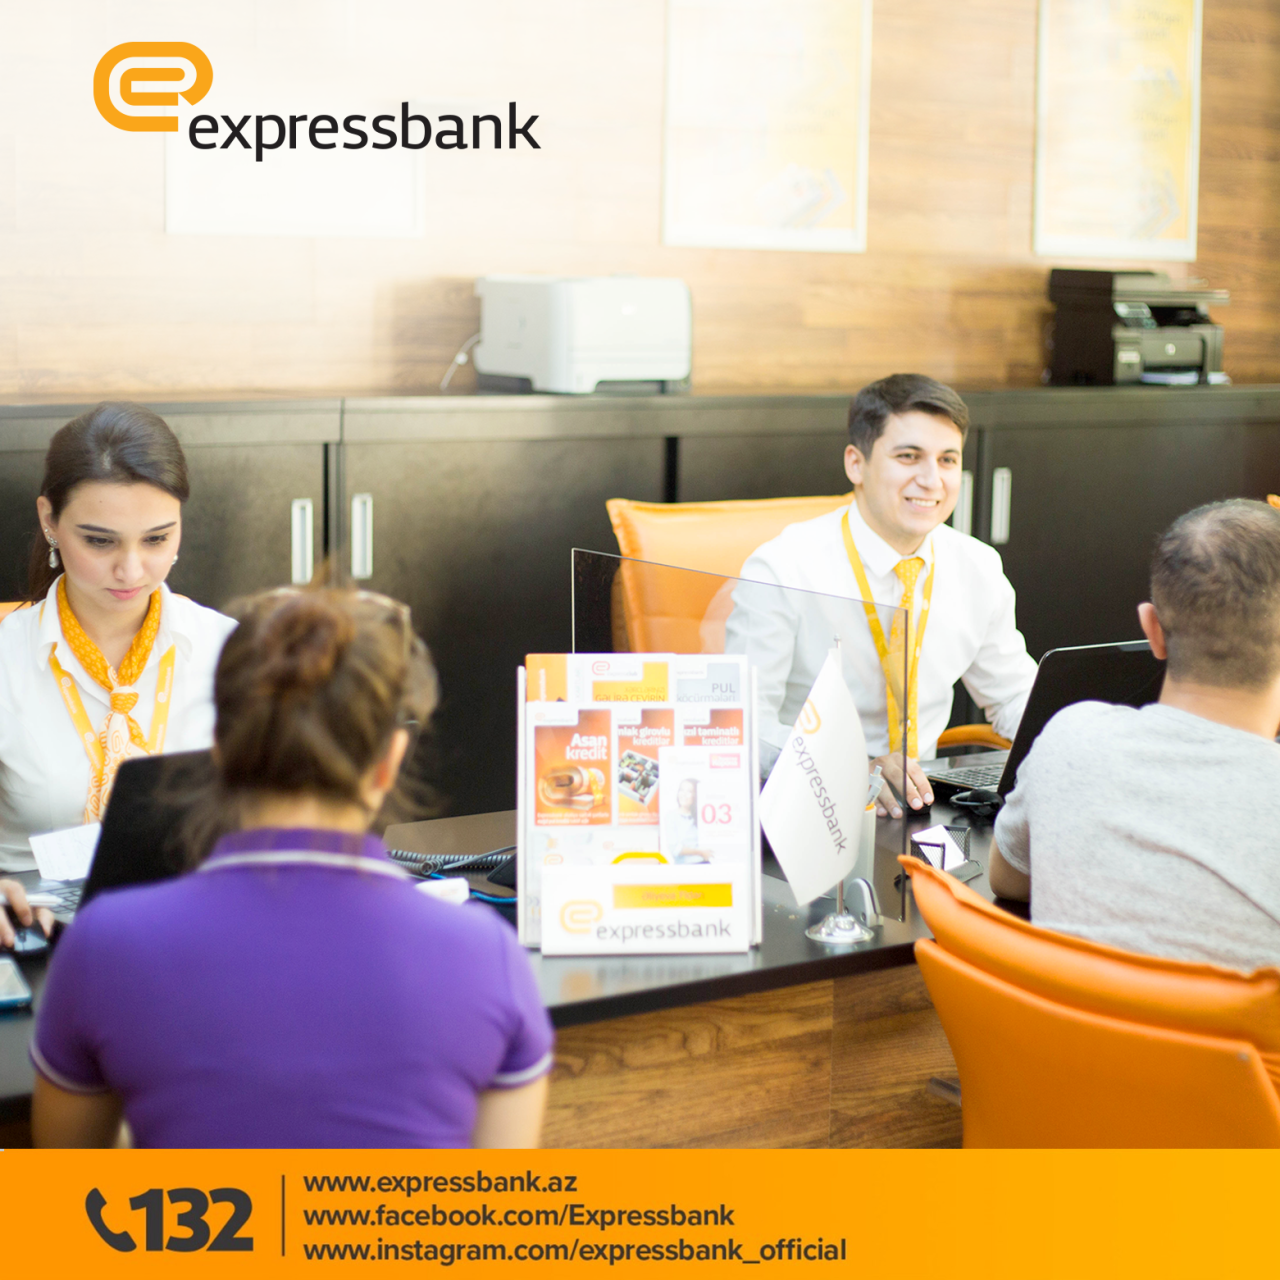 Председатель правления Expressbank-а: “Мы находимся в постоянном поиске новшеств для обеспечения удобств наших клиентов»